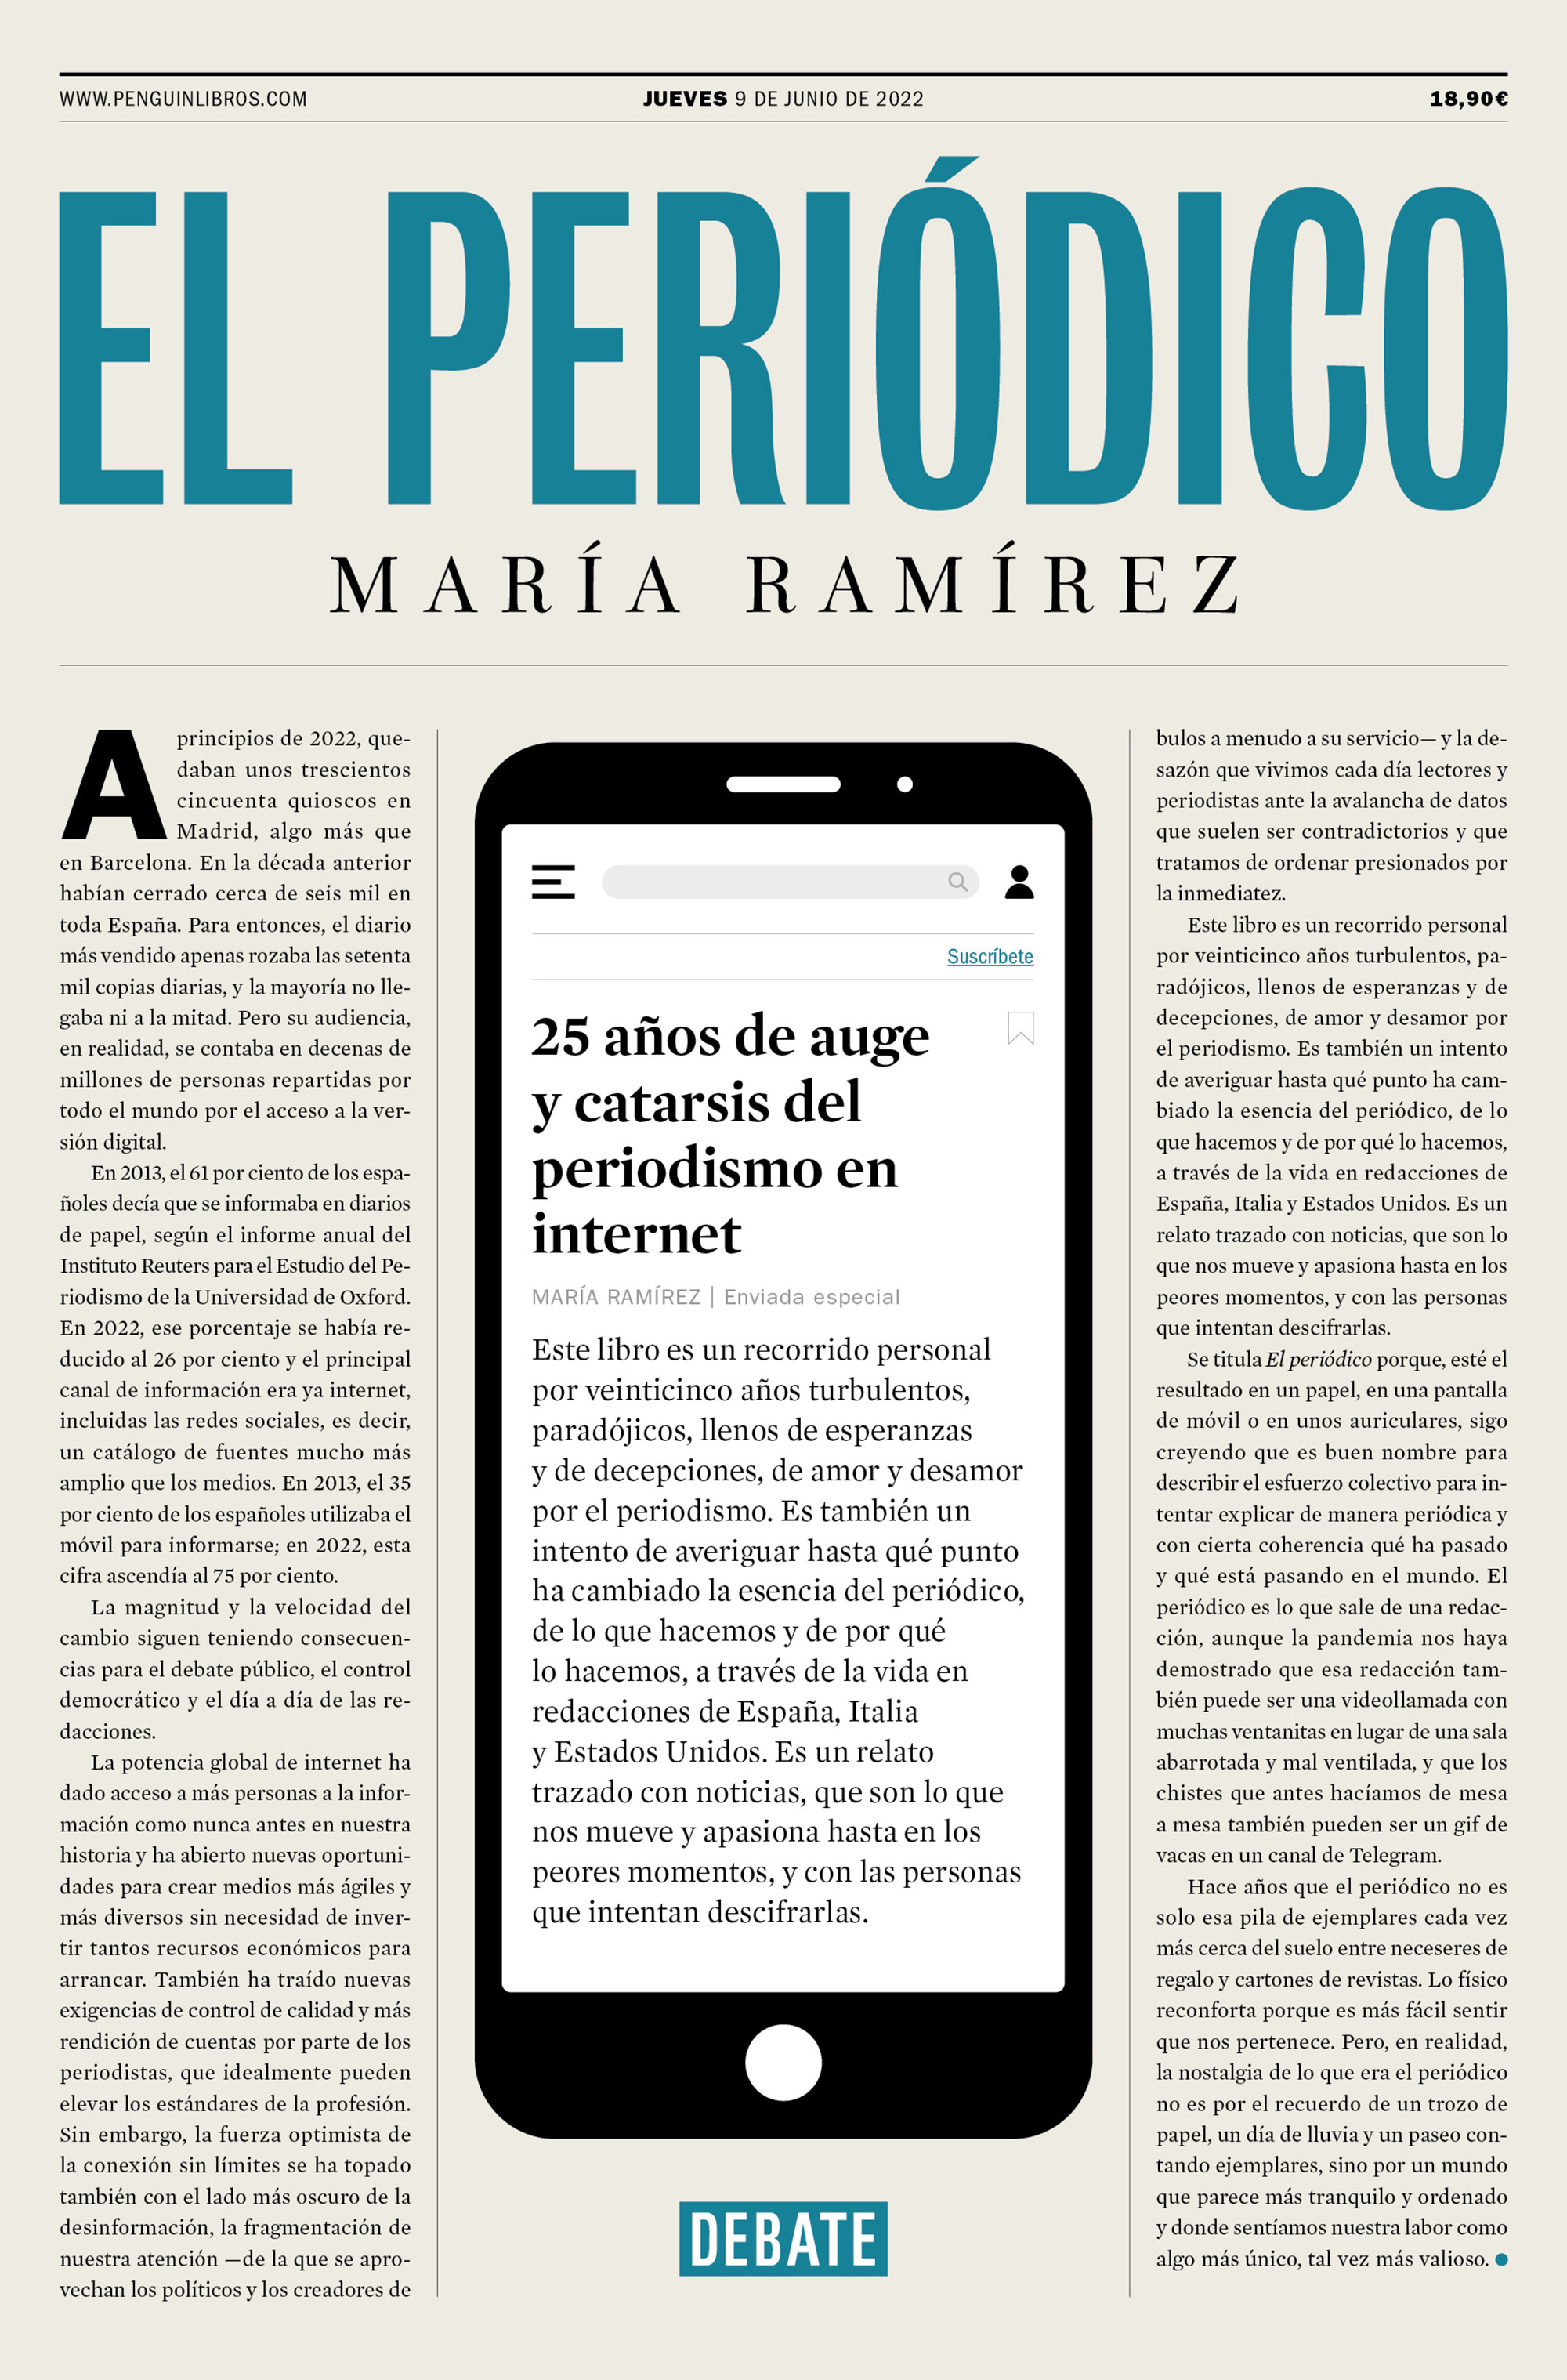 María Ramírez: Últimas noticias sobre el periodismo